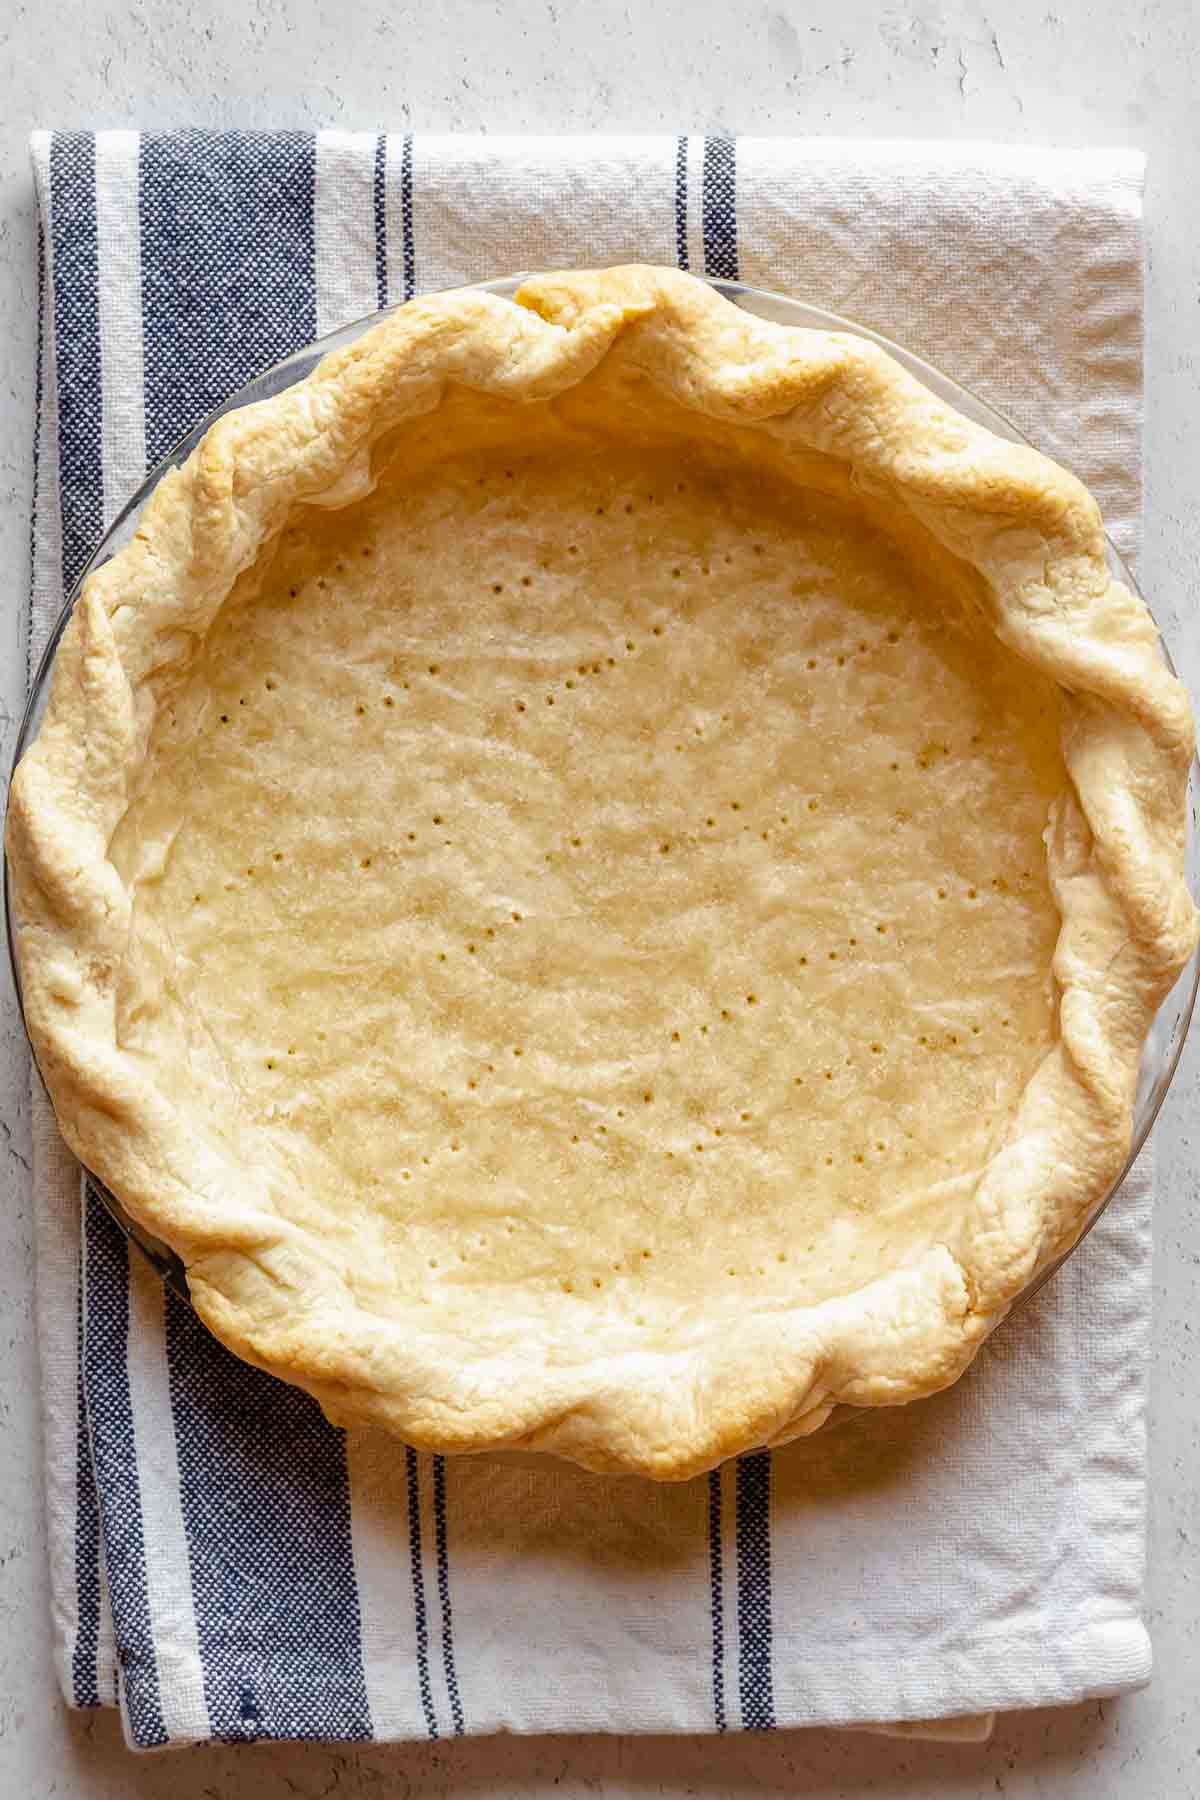 Par baked pie crust.